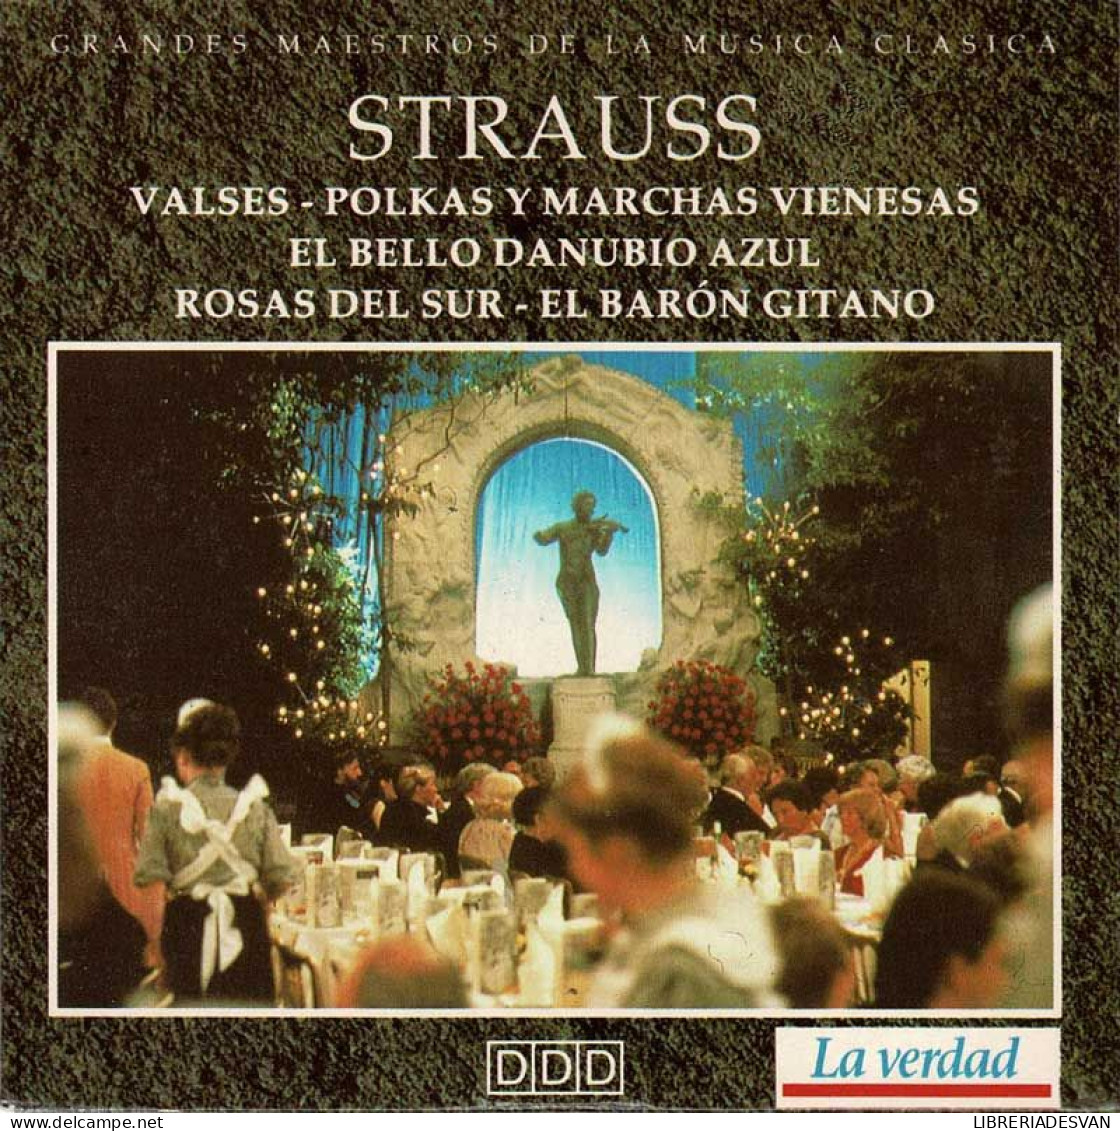 Strauss - Valses. Polkas Y Marchas Vienesas. El Bello Danubio Azul. Rosas Del Sur. El Barón Gitano. CD - Klassik